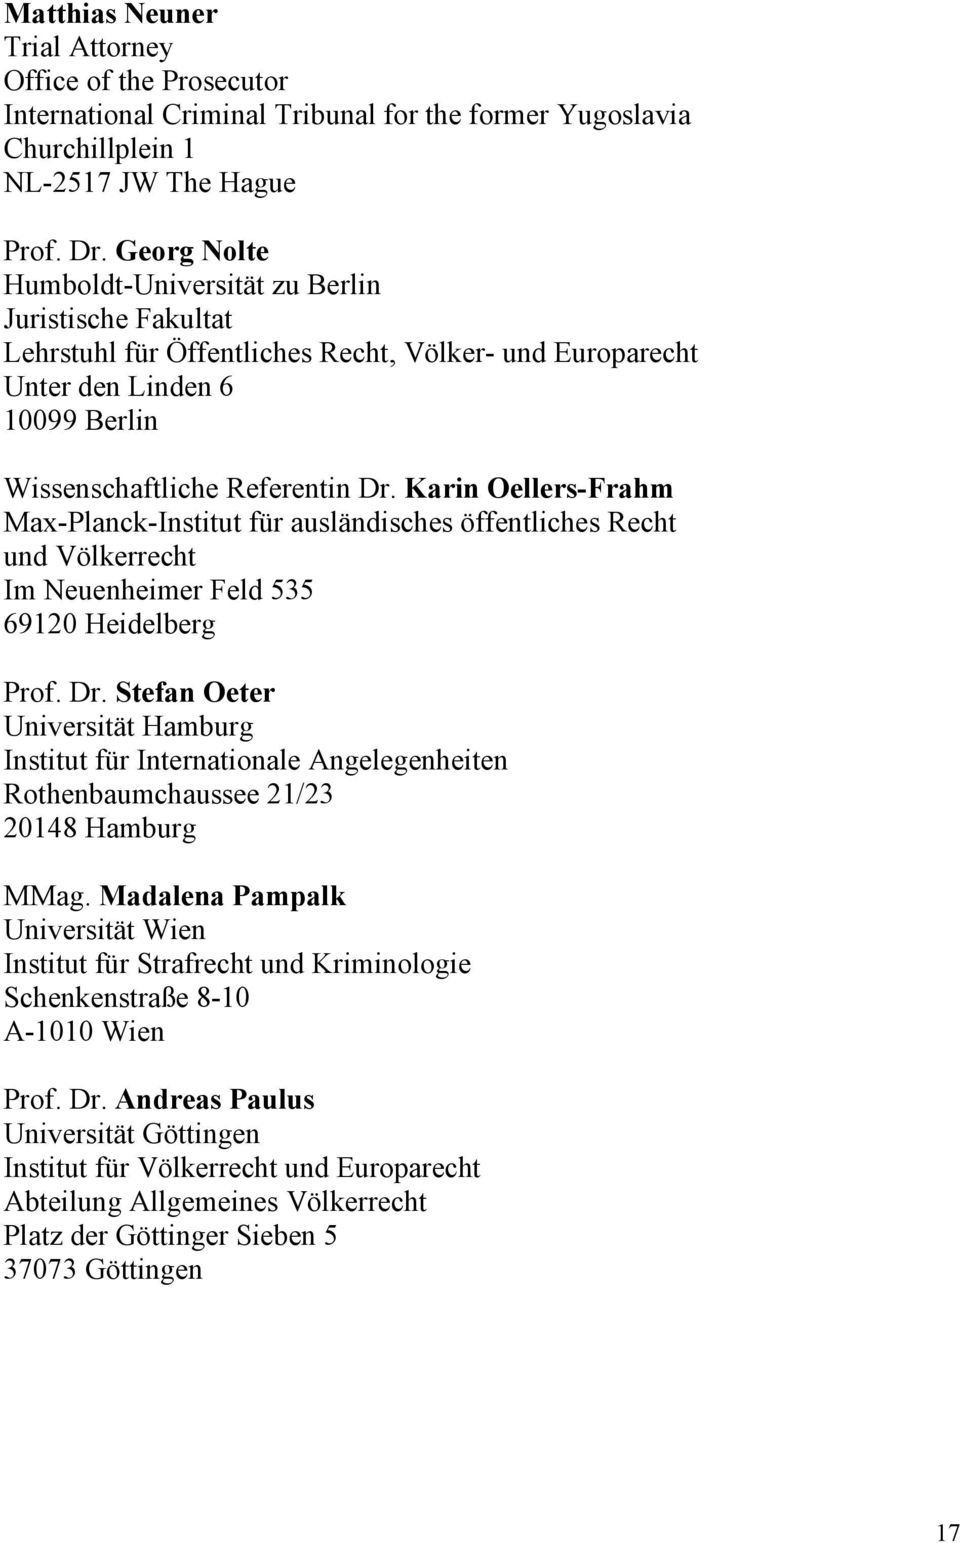 Karin Oellers-Frahm Max-Planck-Institut für ausländisches öffentliches Recht und Völkerrecht Im Neuenheimer Feld 535 69120 Heidelberg Prof. Dr.